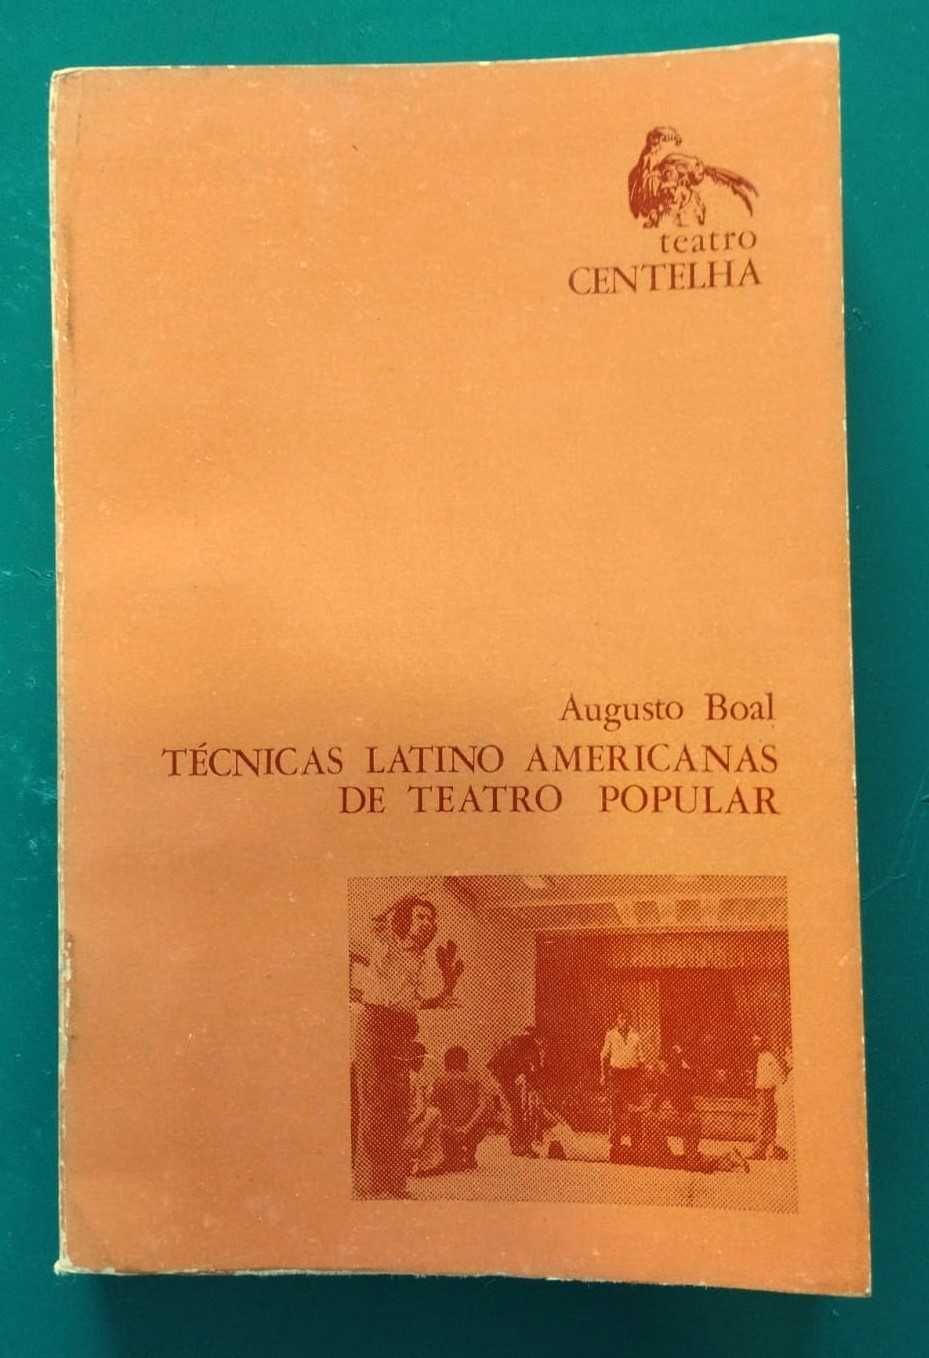 Augusto Boal, Técnicas Latino Americanas de Teatro Popular